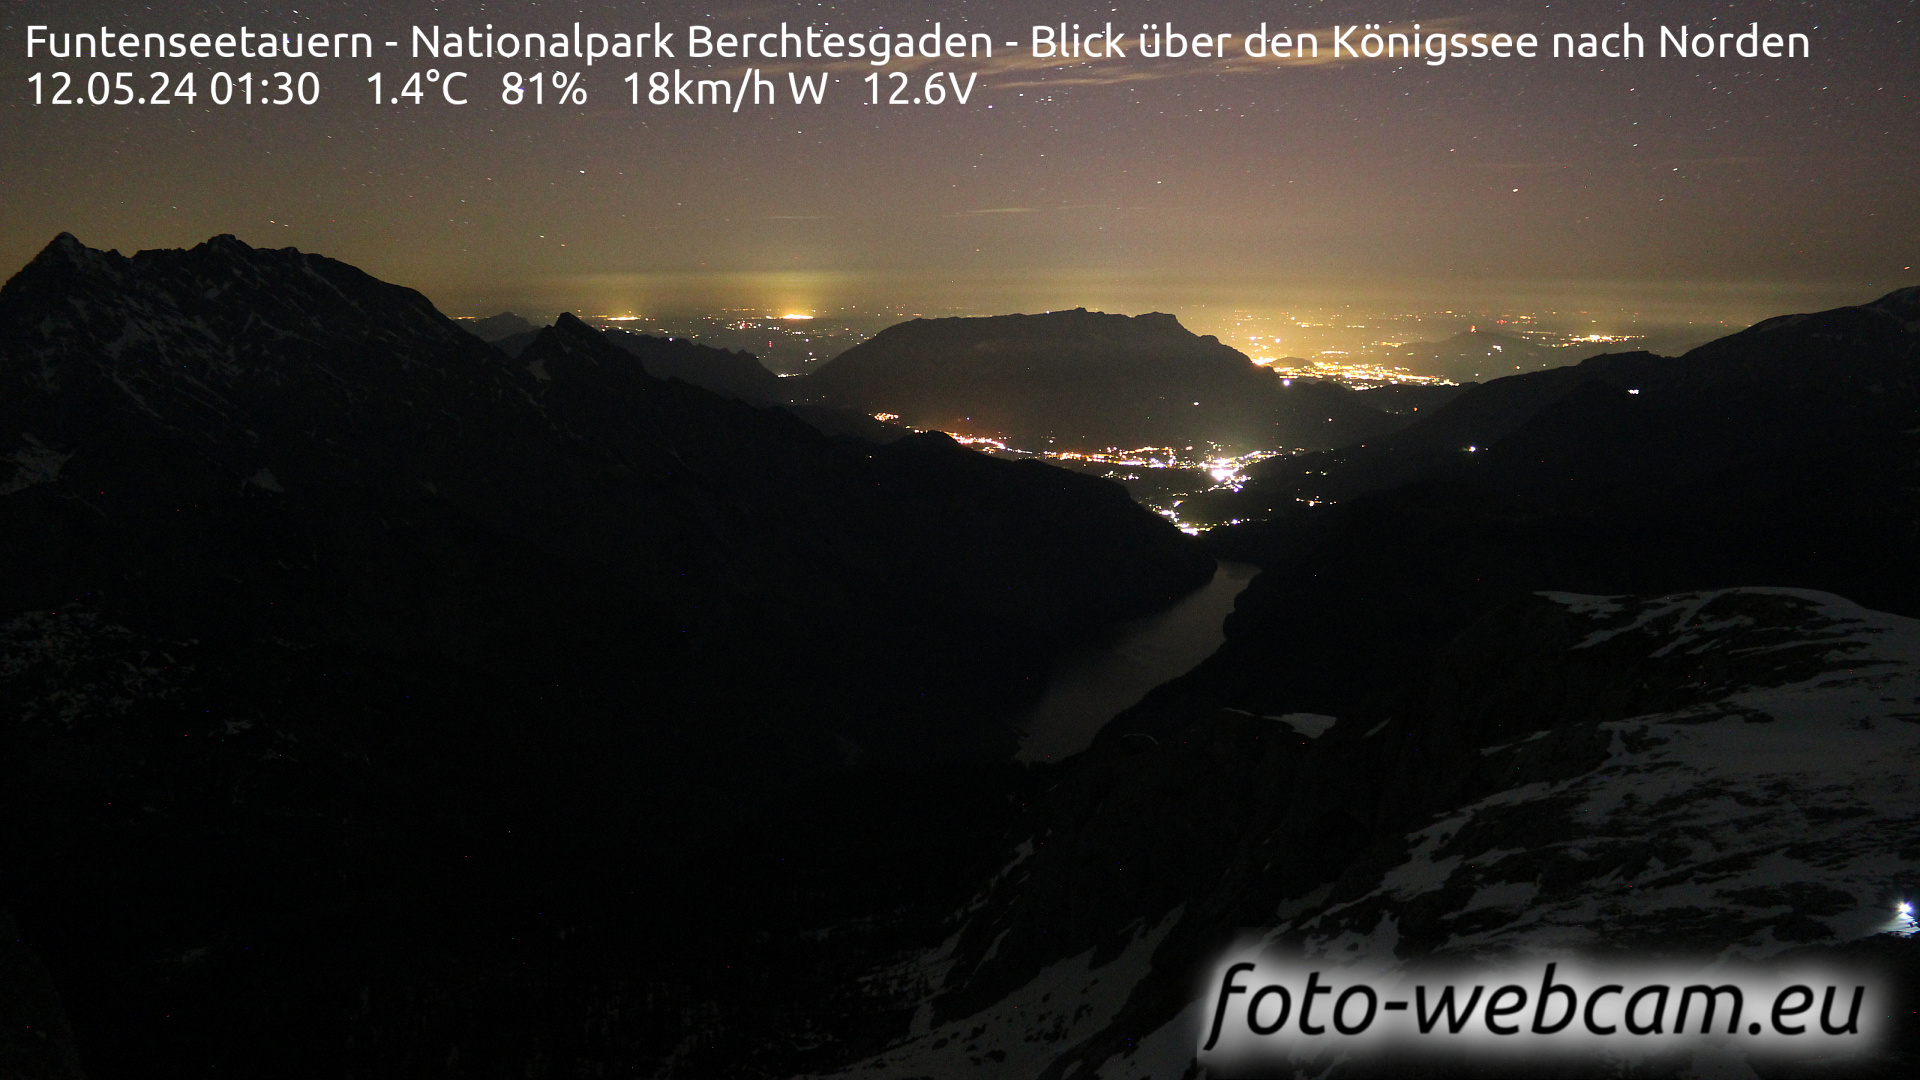 Berchtesgaden Je. 01:48